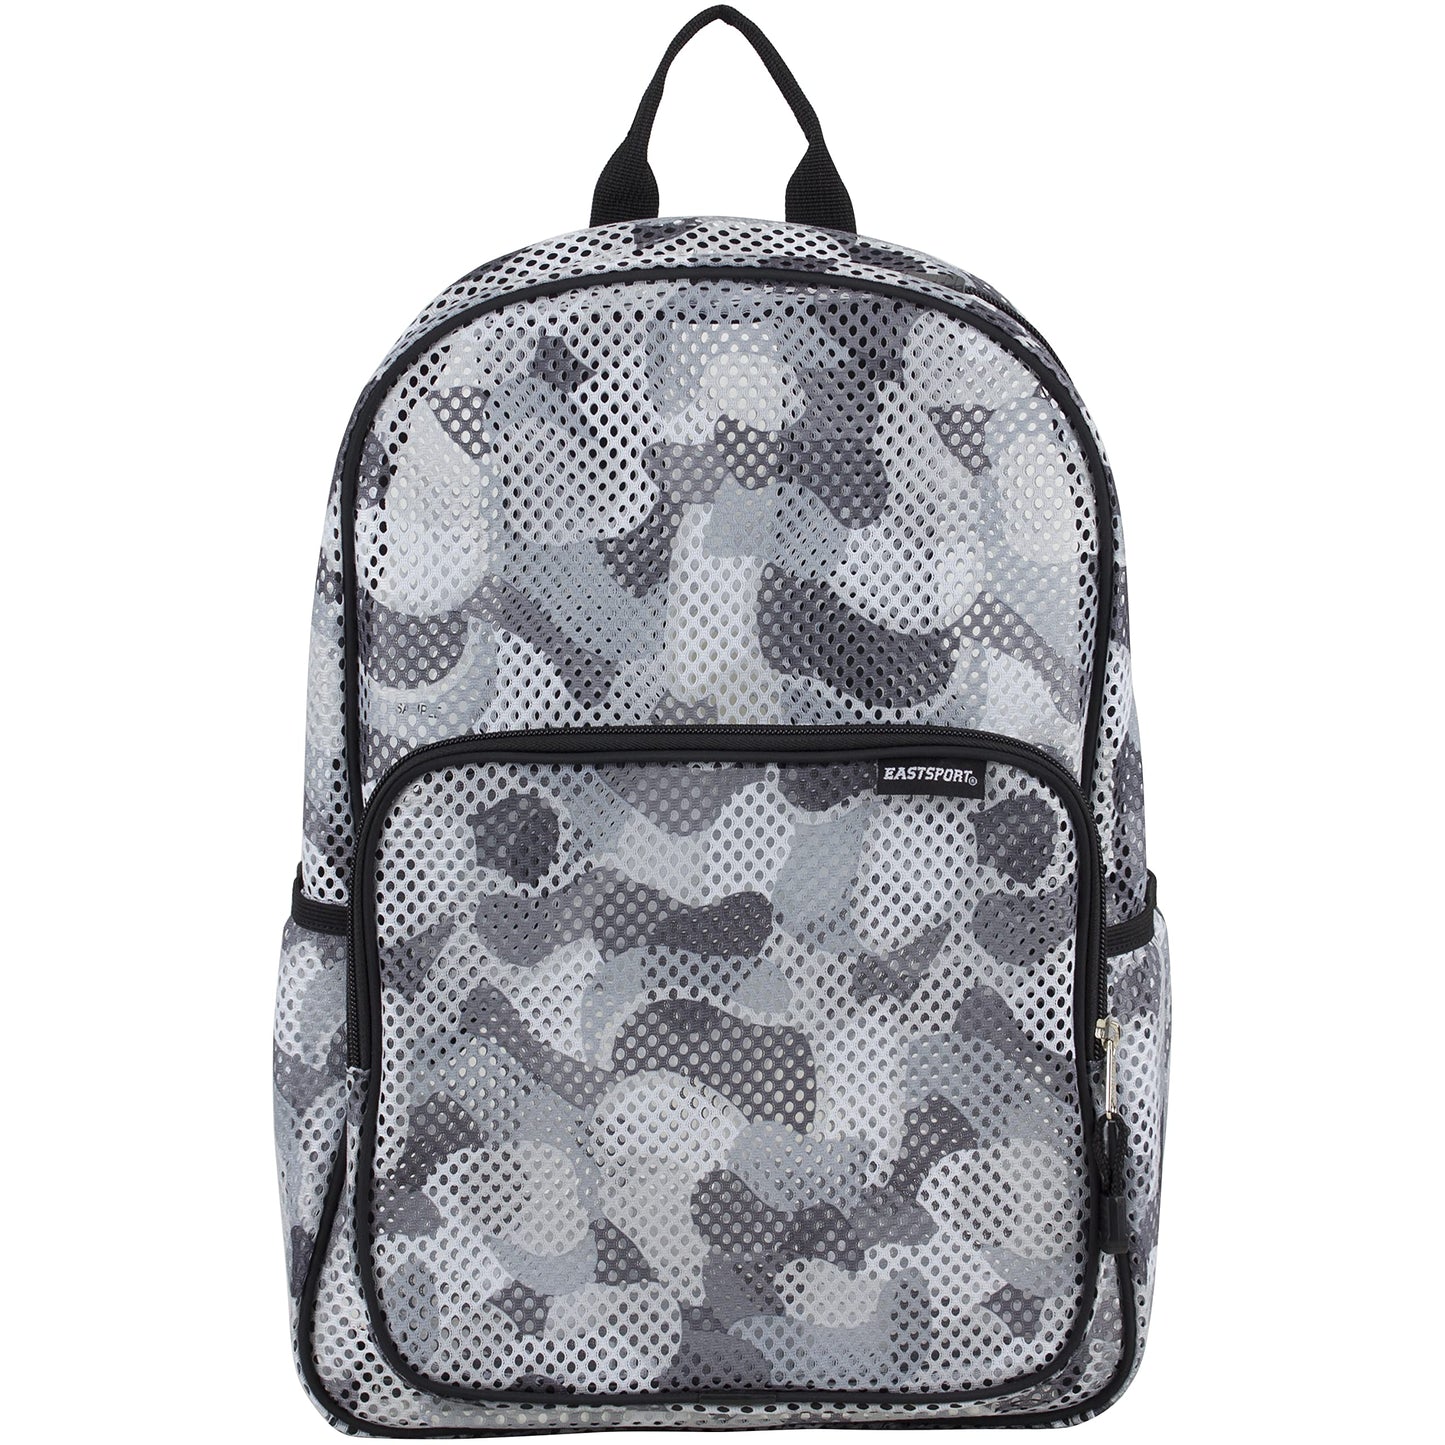 Eastsport Mesh Backpack With Adjustable Padded Shoulder Straps